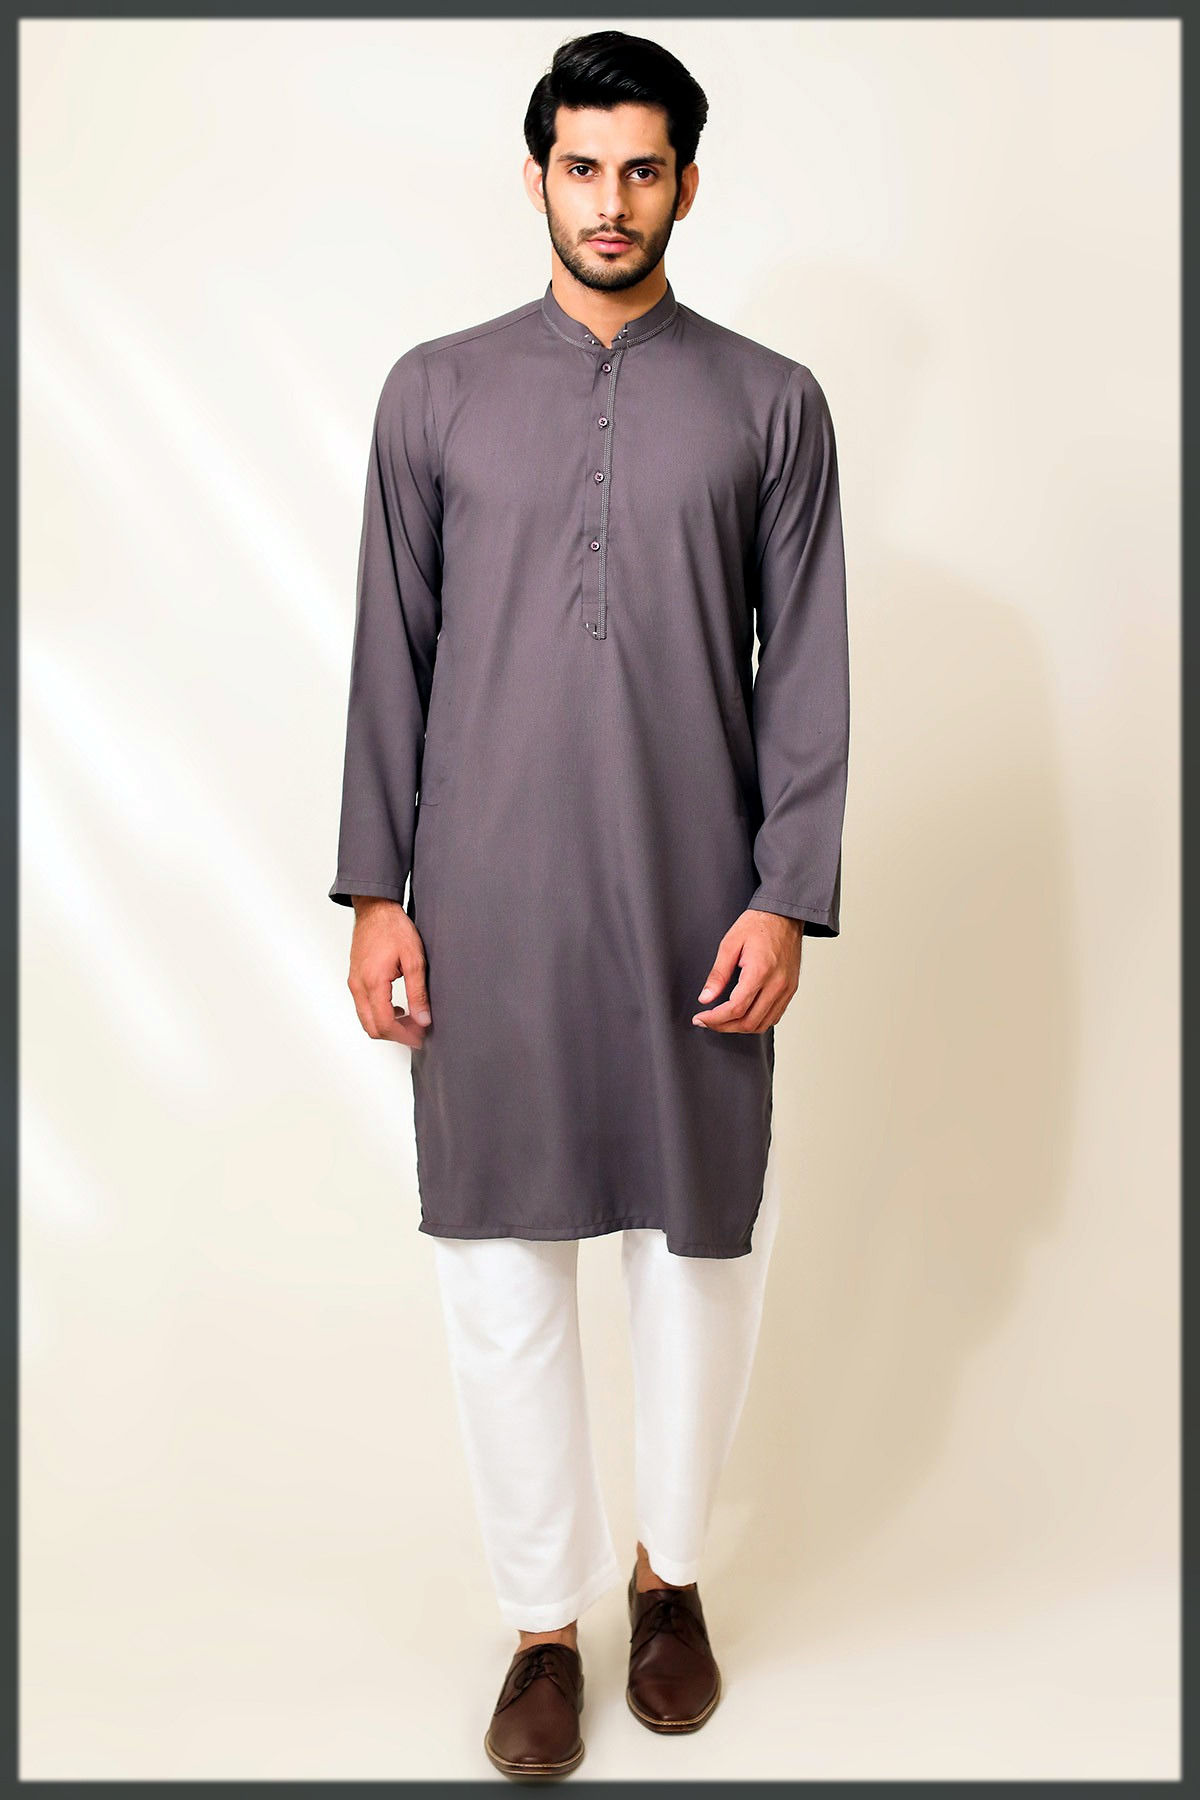 alkaram Men Clothing Brands in Pakistan